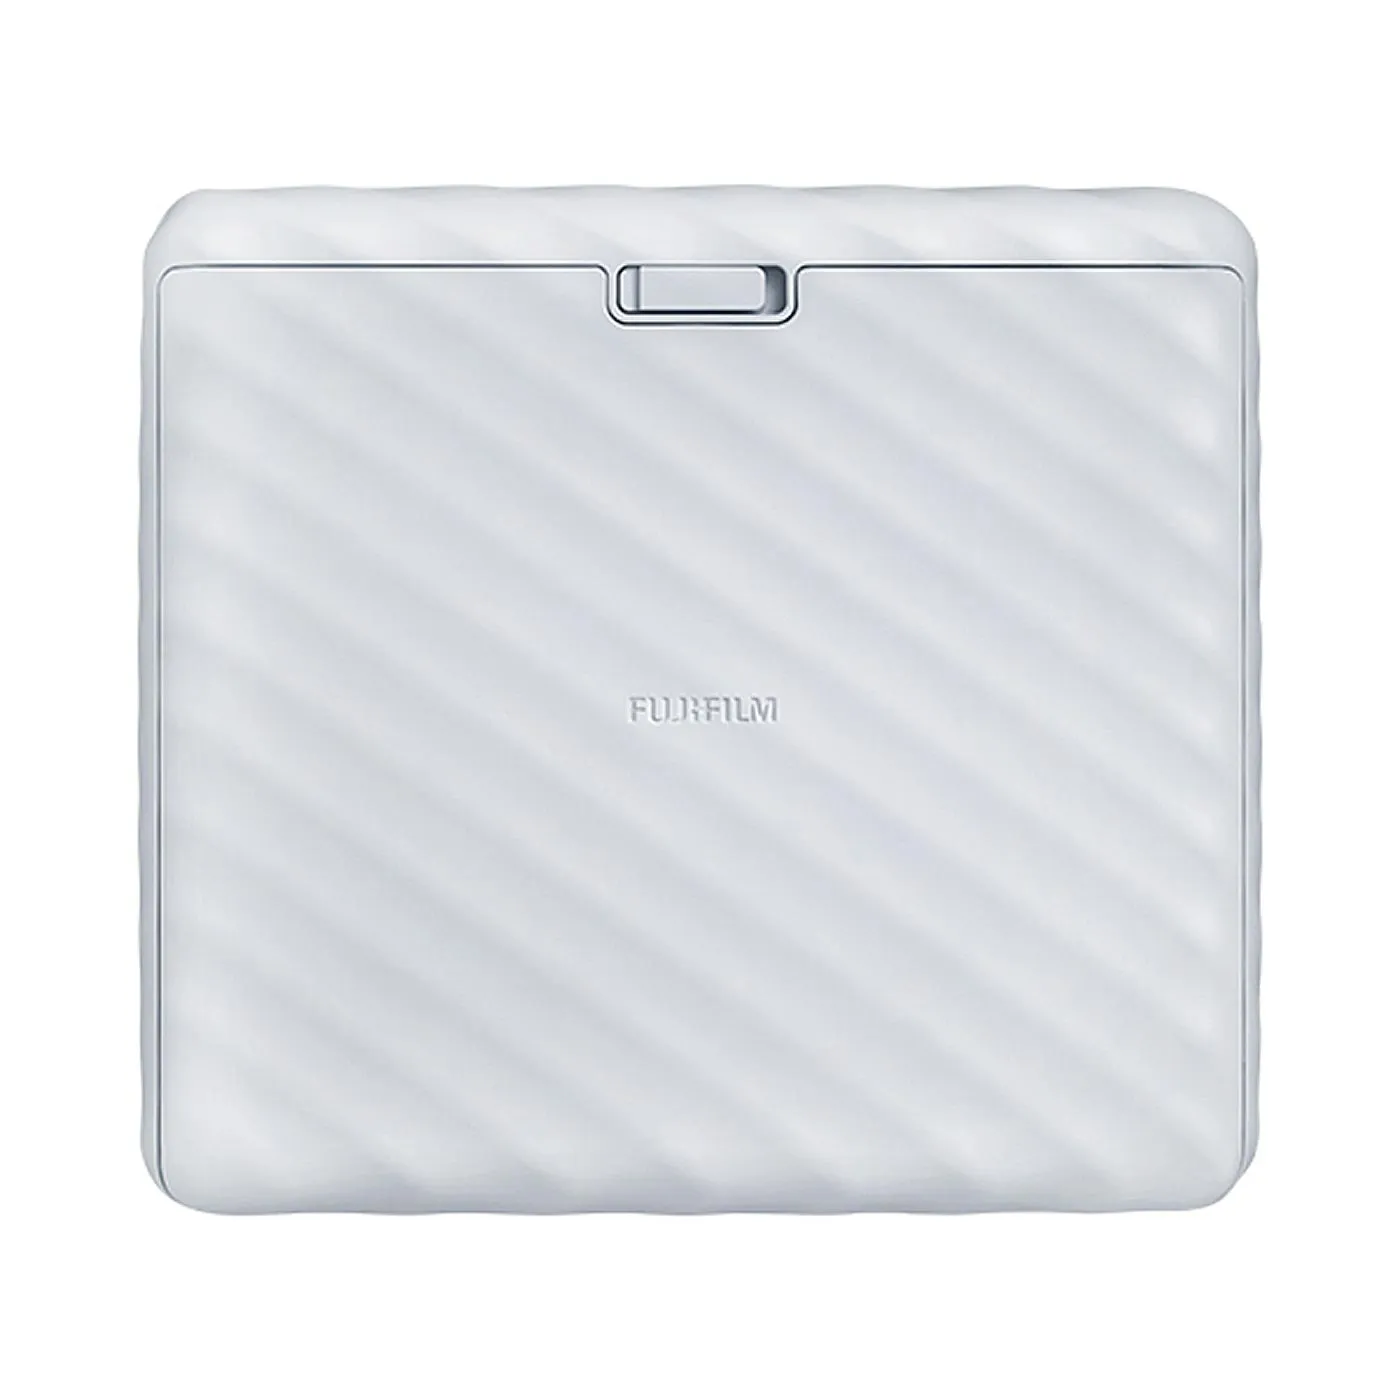 Impresora Fujifilm Instax Wide Blanco